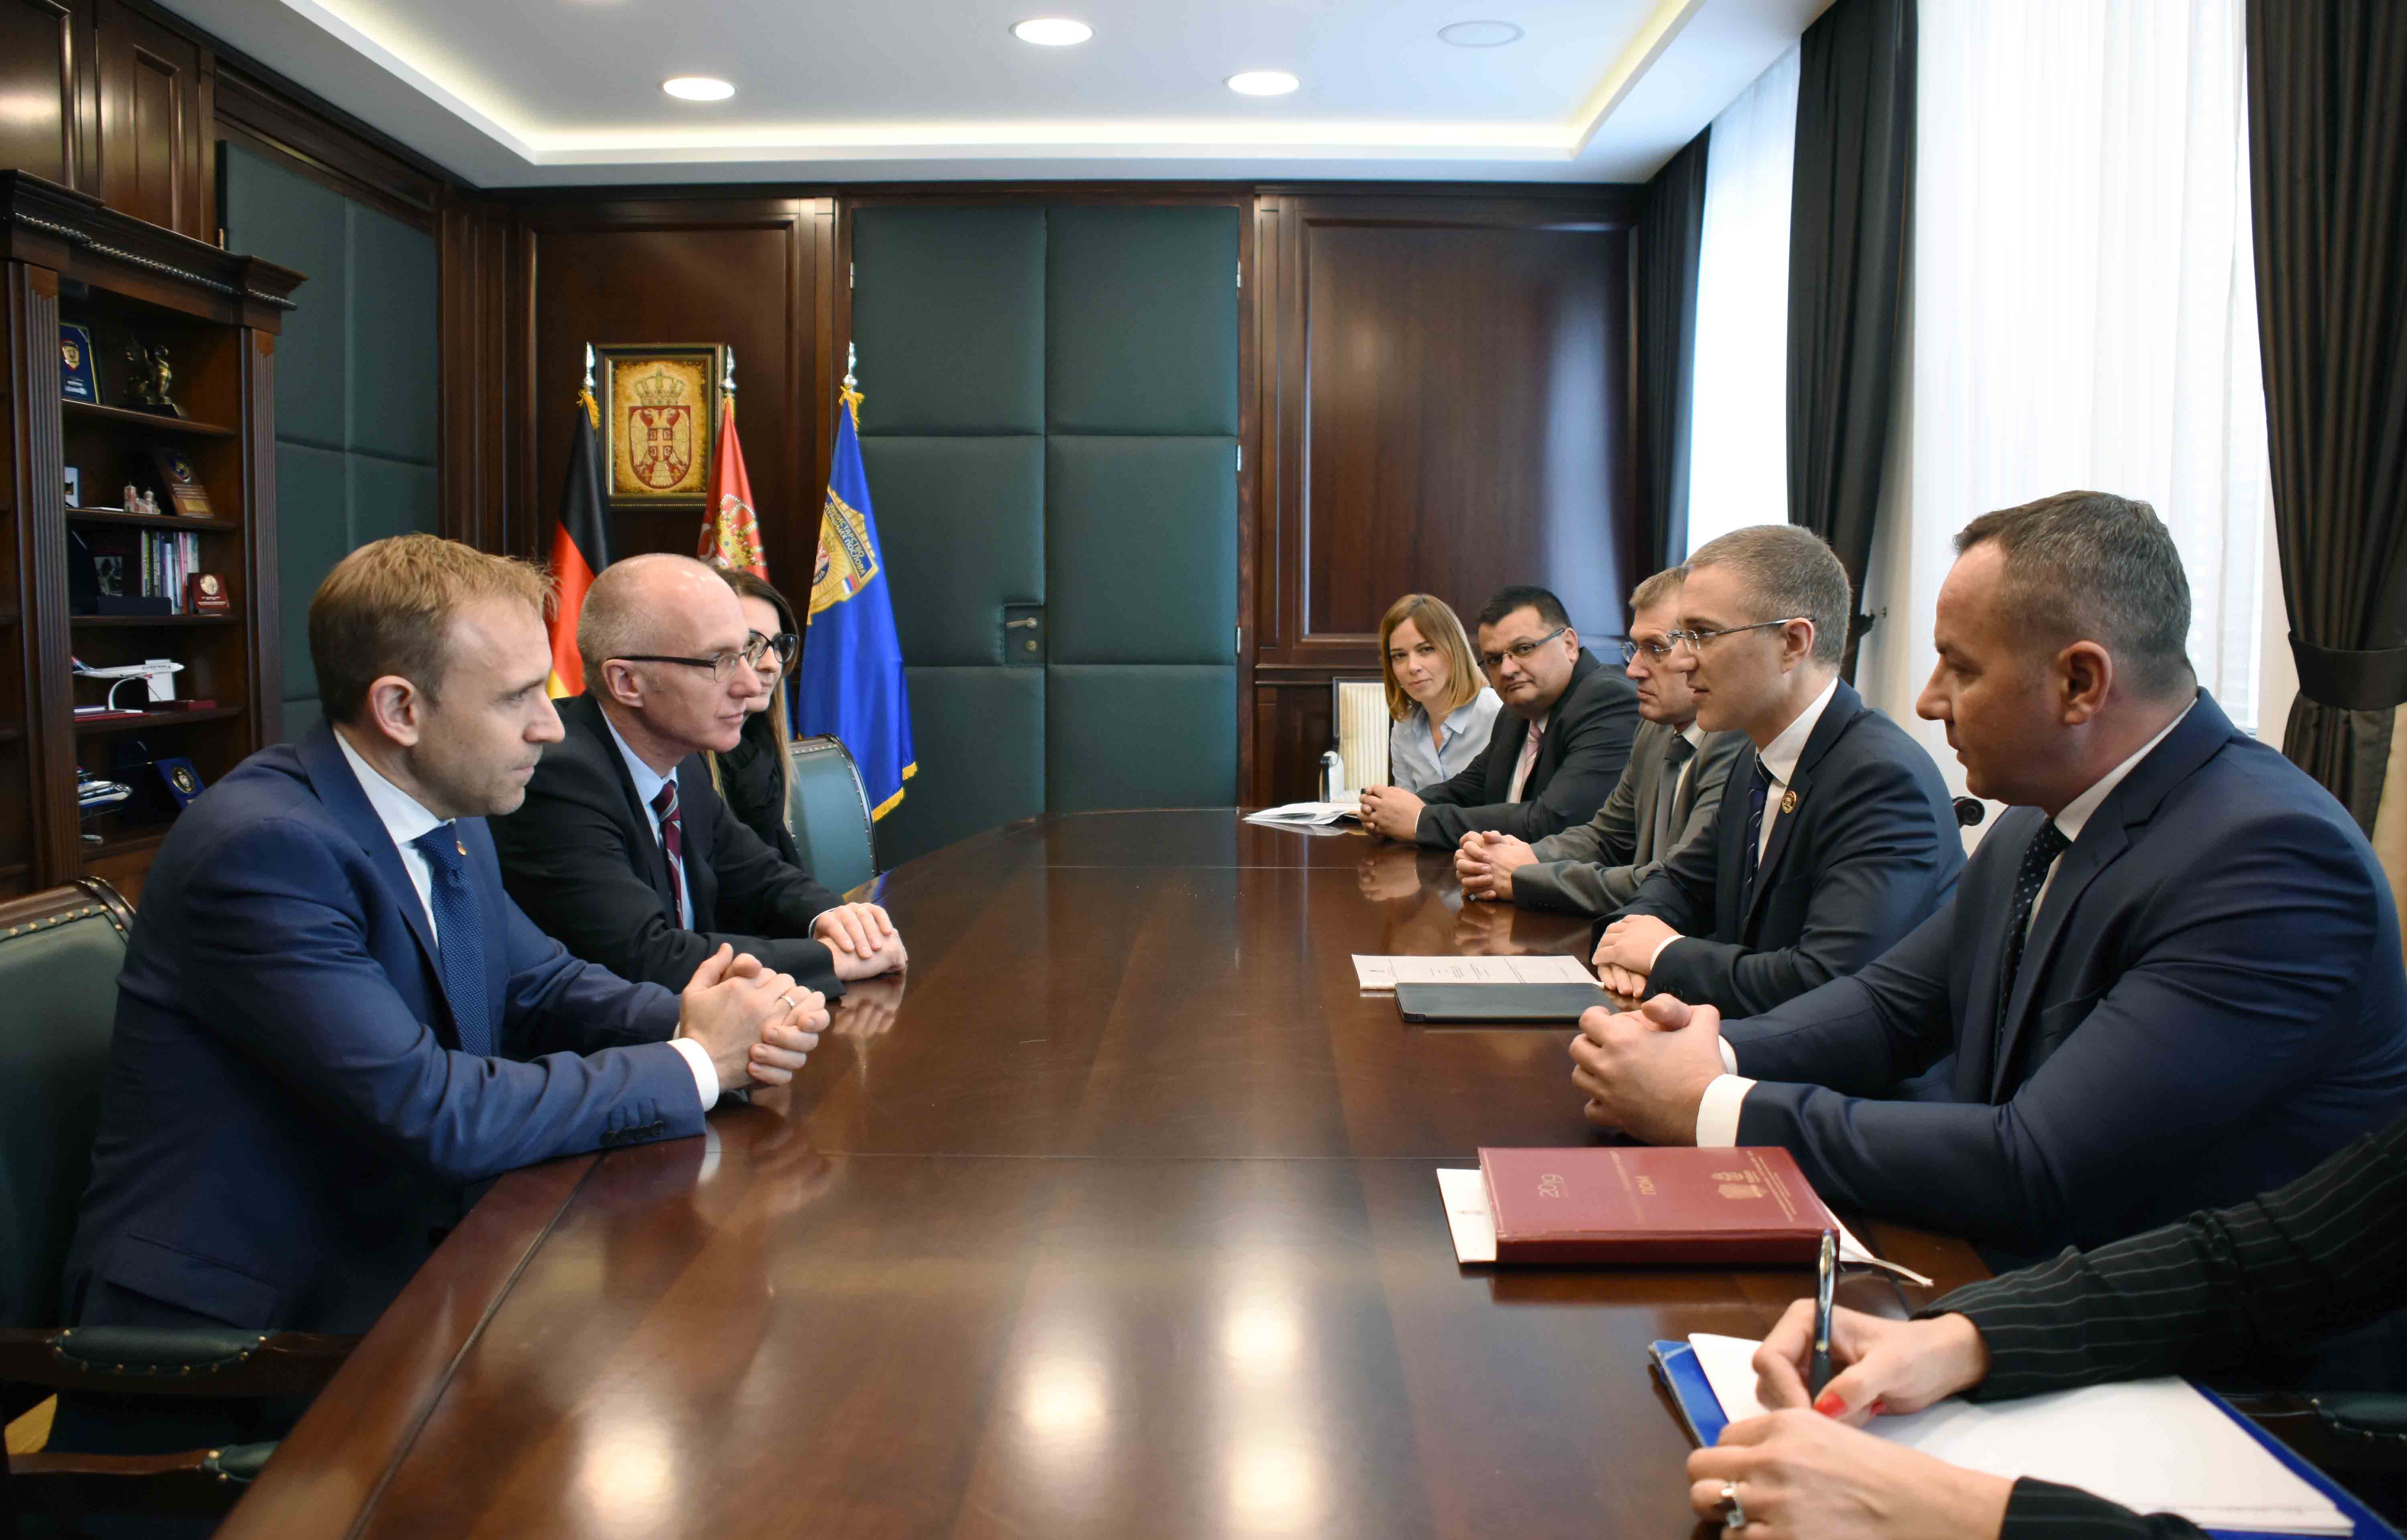 Ministar Stefanović se zahvalio Nemačkoj na podršci koju pruža Ministarstvu unutrašnjih poslova u procesu jačanja kapaciteta MUP-a